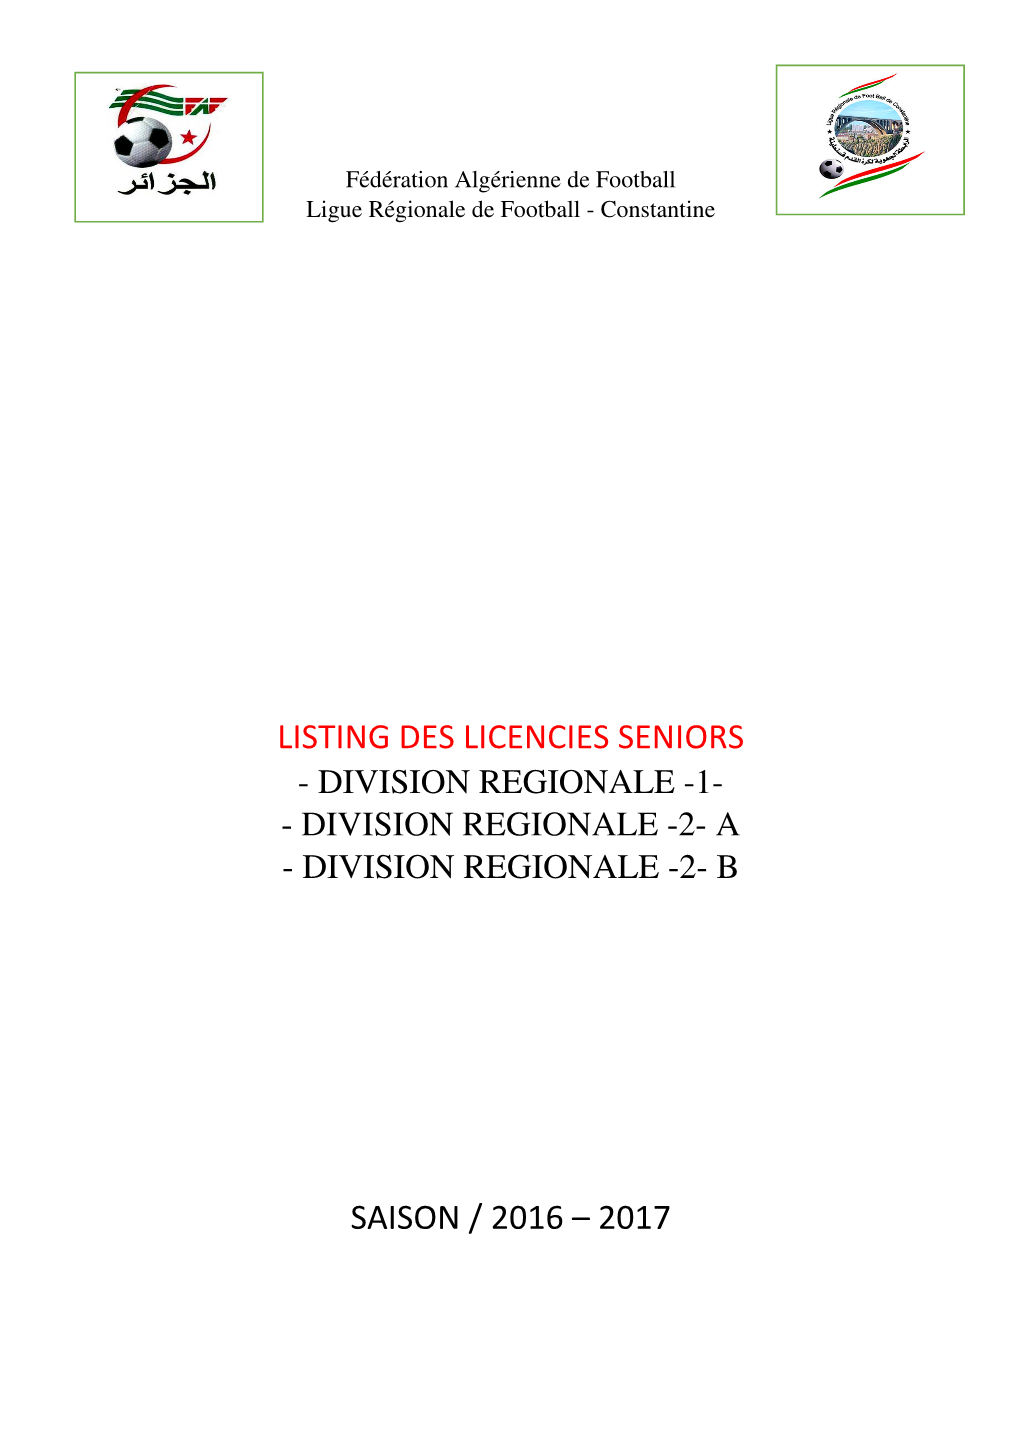 Listing Des Licencies Seniors Saison / 2016 – 2017